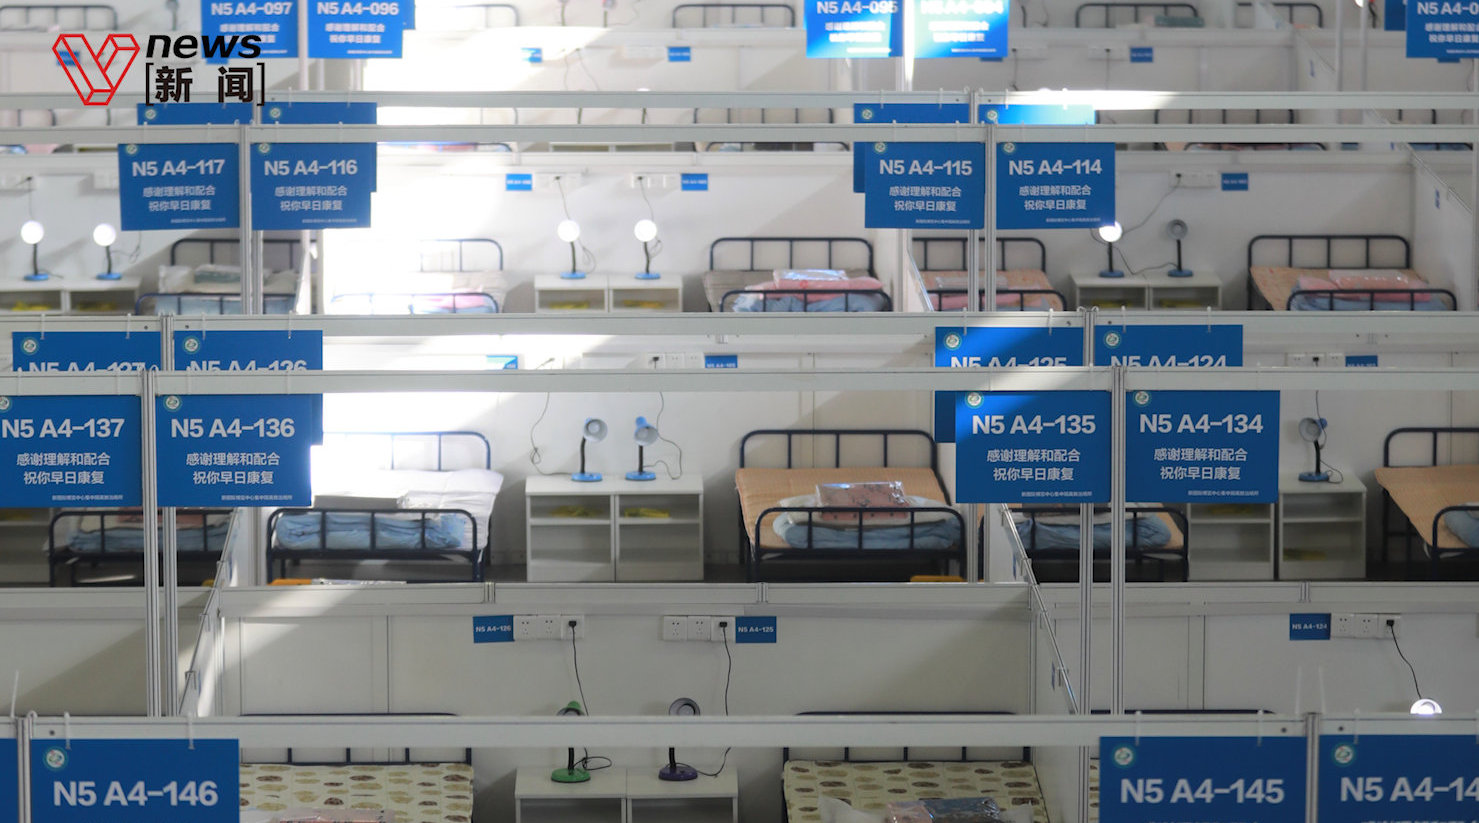 旺角3層「碌架床」床位出租實況 床位堆滿爐具衣物15人用1廁 - 香港經濟日報 - TOPick - 親子 - 休閒消費 - D180313